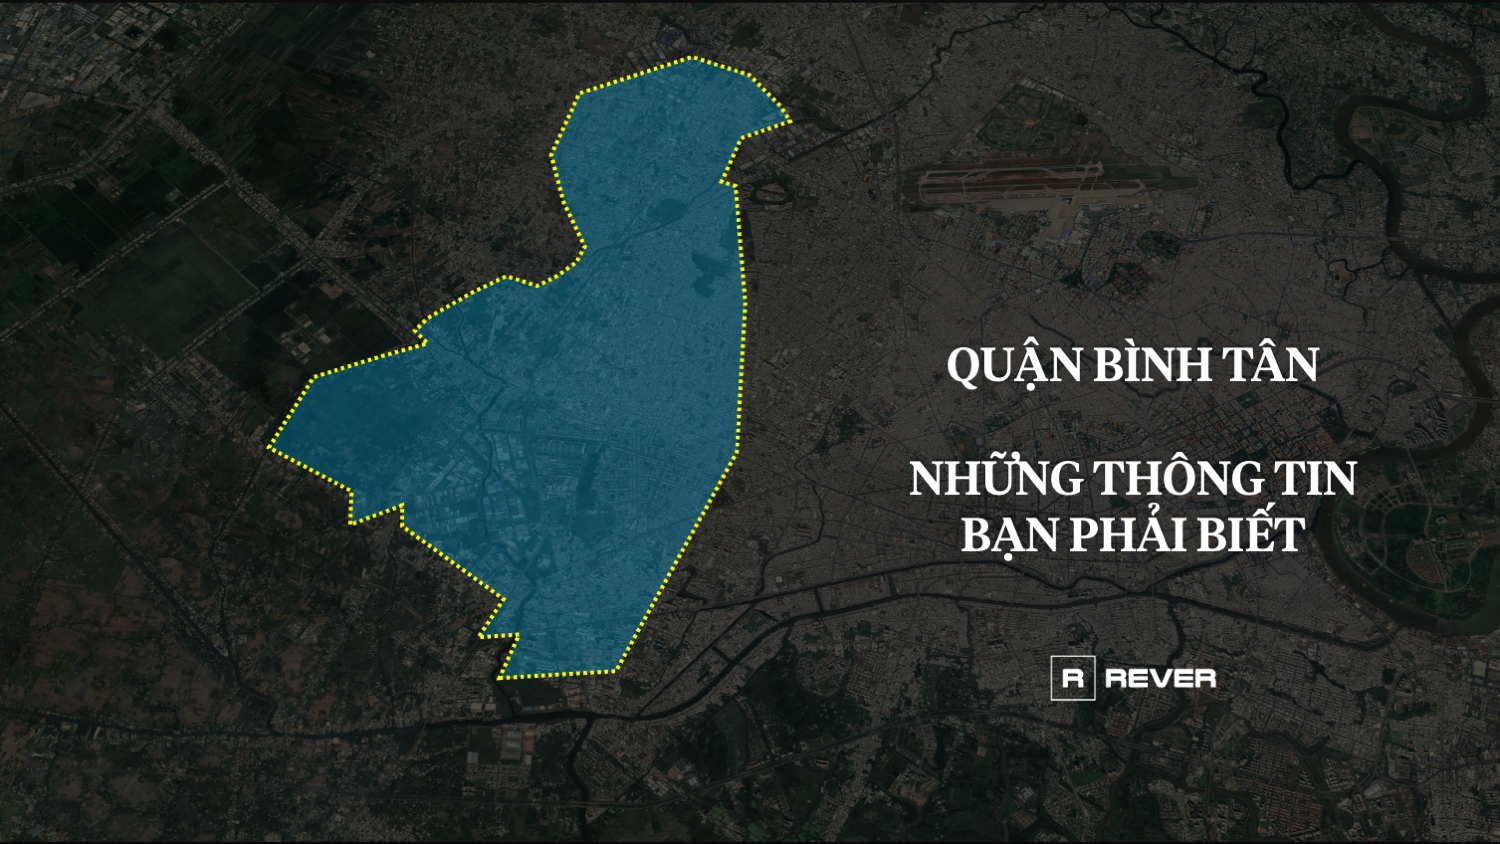 Video: Những thông tin cần biết về Quận Bình Tân và dự án nổi bật nhất sắp mở bán The Privia